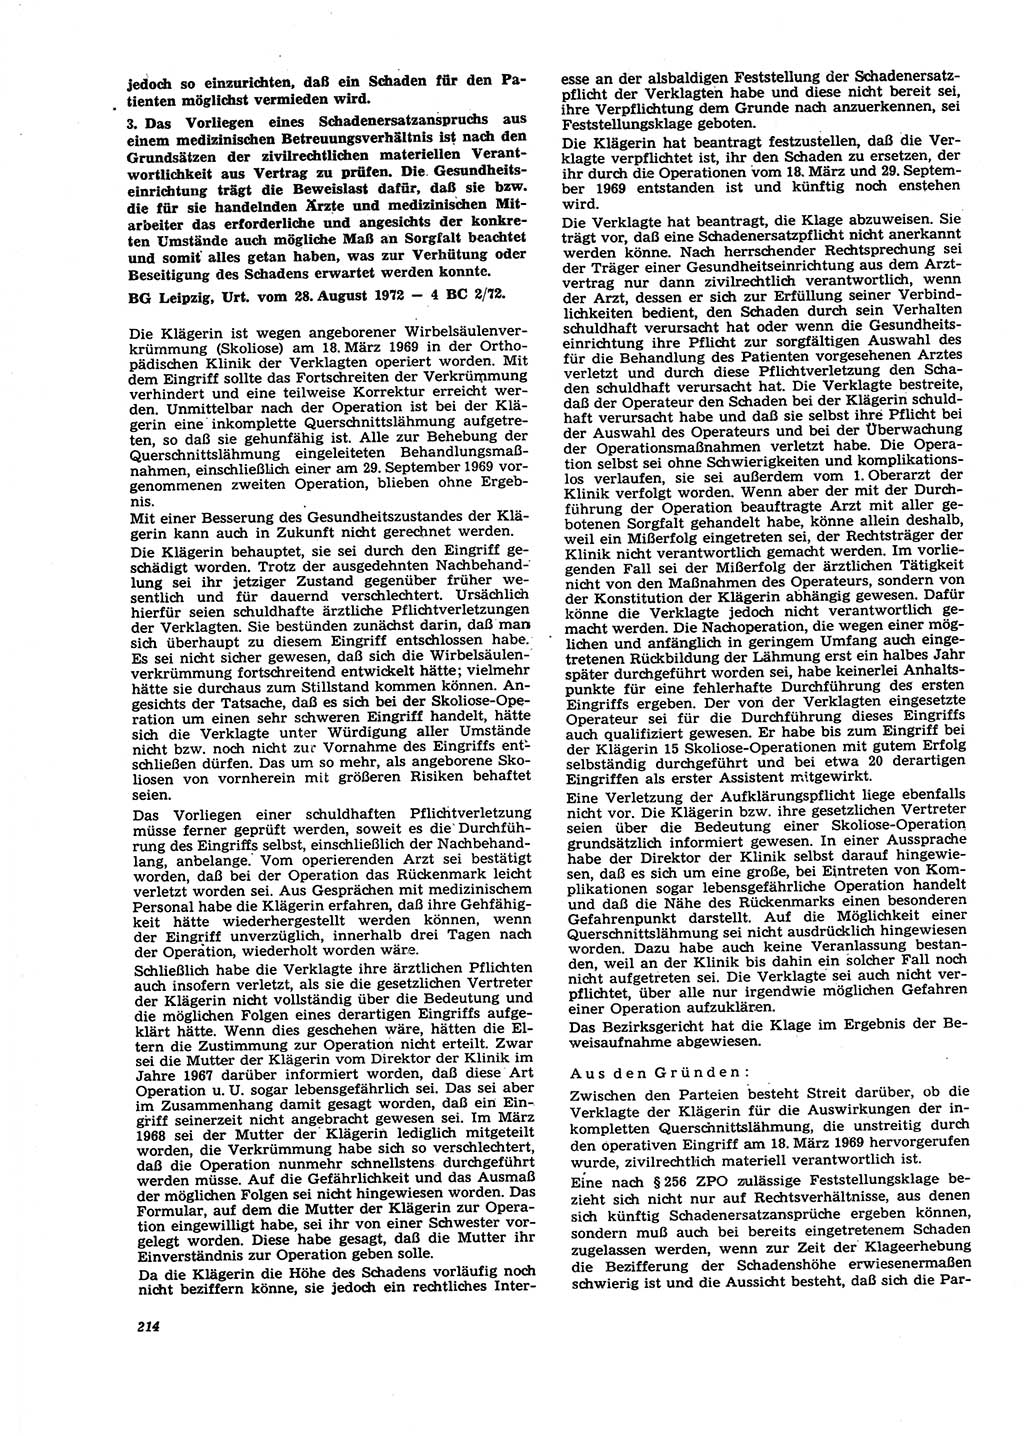 Neue Justiz (NJ), Zeitschrift für Recht und Rechtswissenschaft [Deutsche Demokratische Republik (DDR)], 27. Jahrgang 1973, Seite 214 (NJ DDR 1973, S. 214)